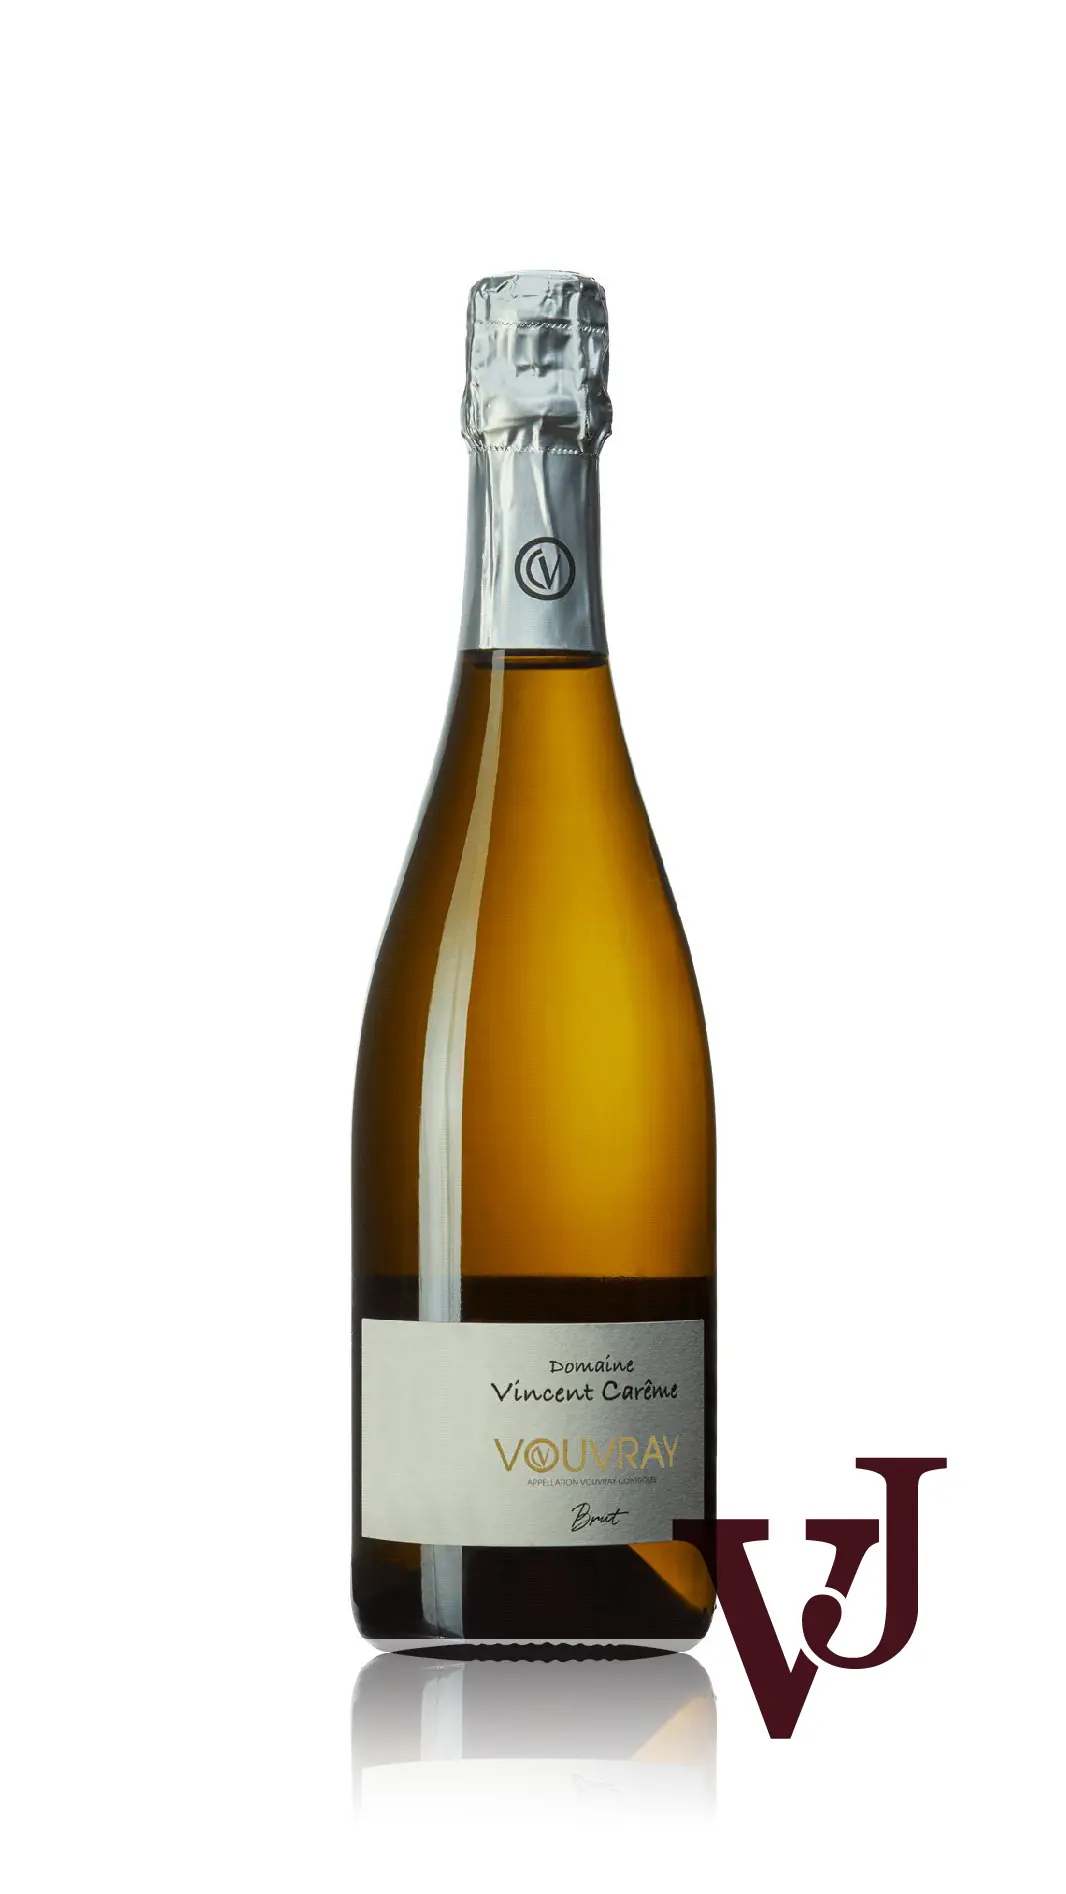 Mousserande Vin - Vouvray Brut Domaine Vincent Carême 2021 artikel nummer 9425701 från producenten Domaine Vincent Careme från Frankrike - Vinjournalen.se